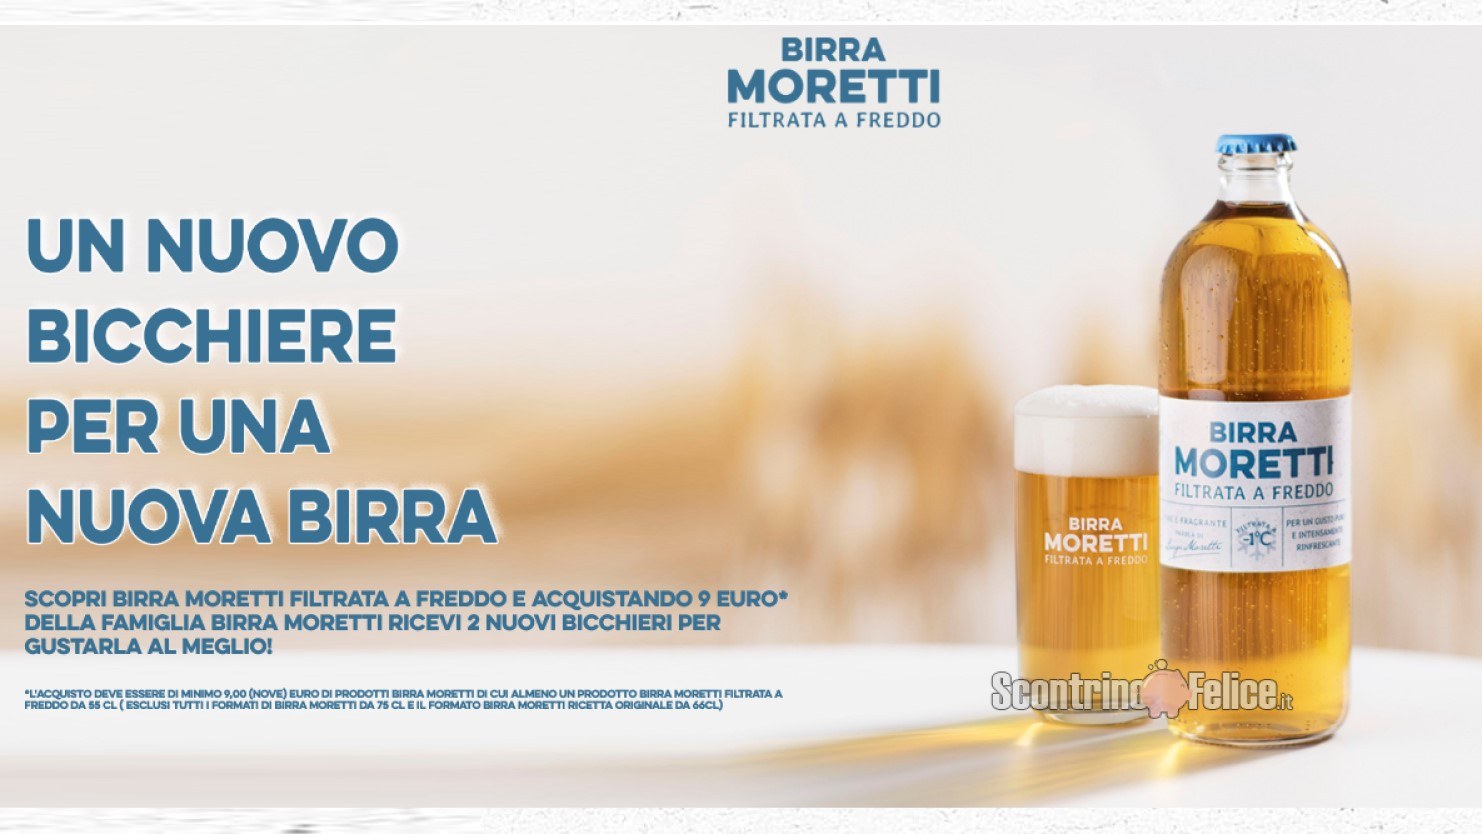 Birra Moretti Filtrata a Freddo richiedi 2 bicchieri come premio certo